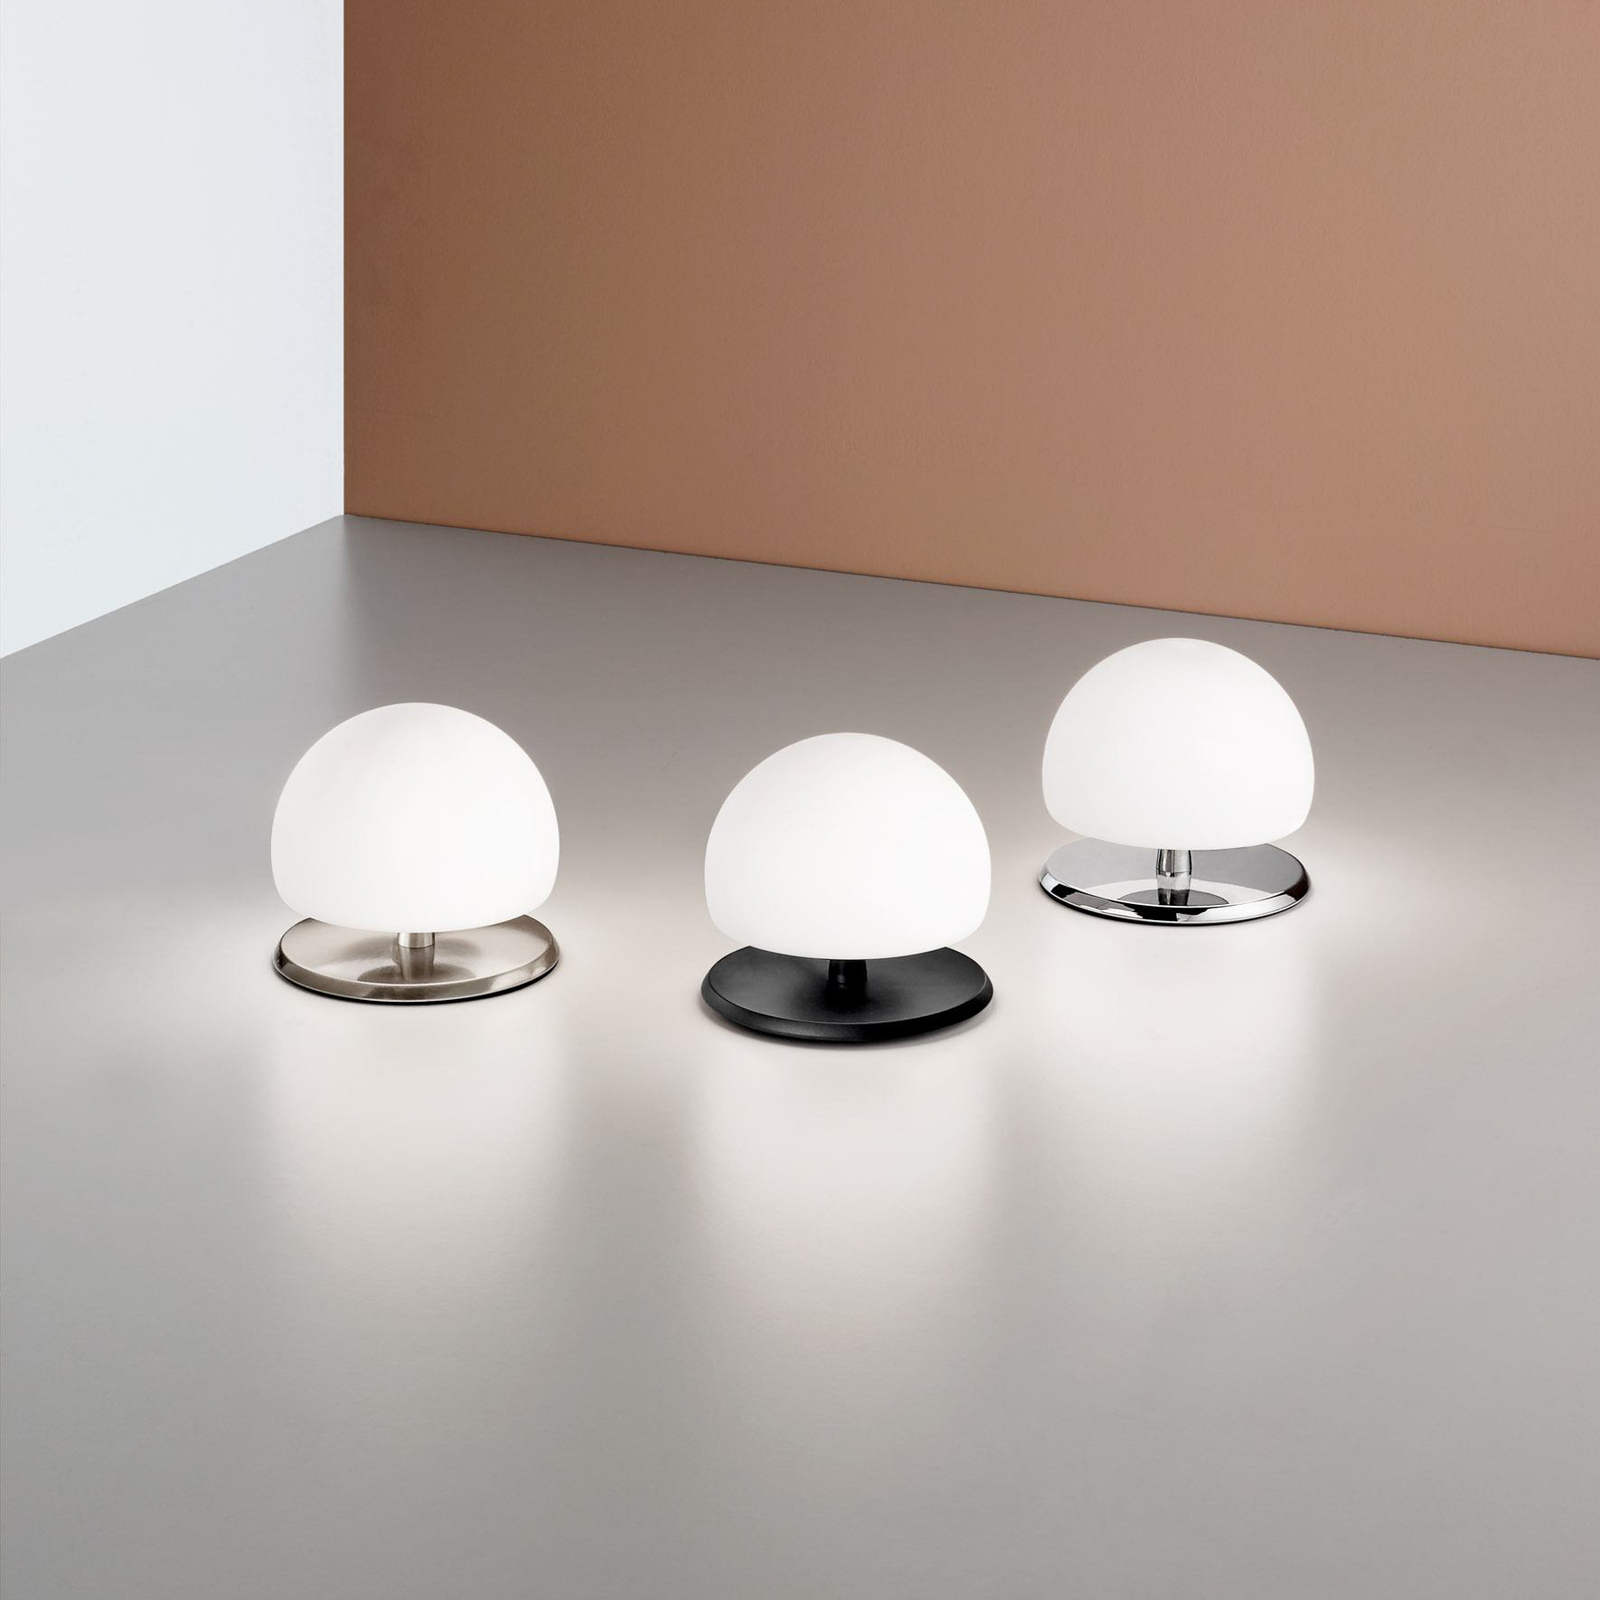 Morgana asztali lámpa, nikkel / fehér, érintéses dimmer, 3,000 K